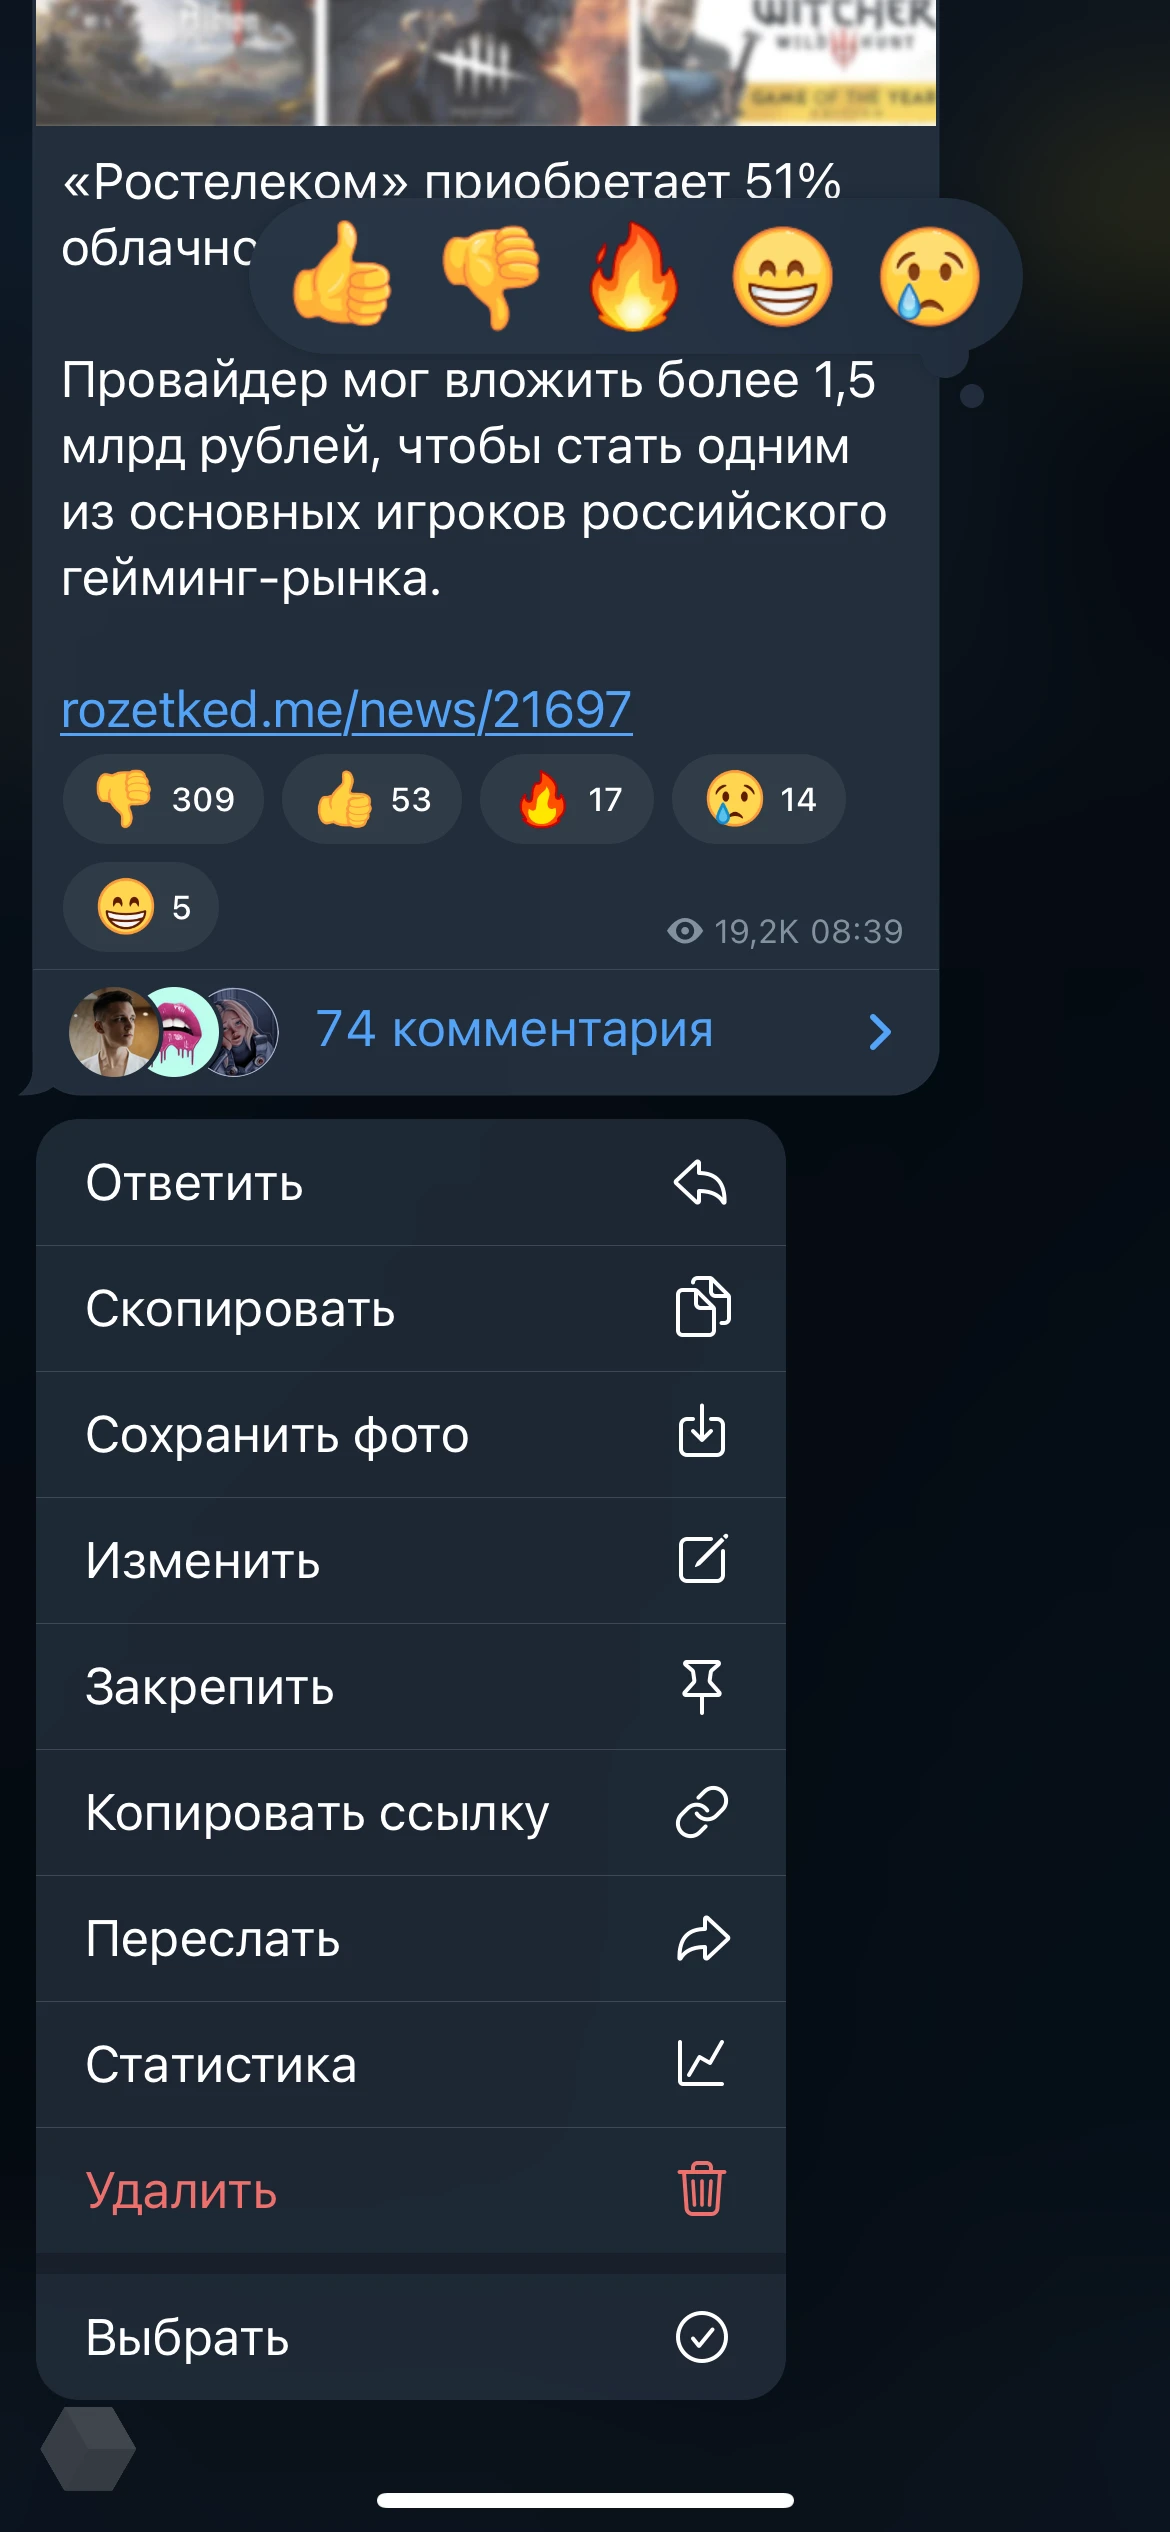 Как использовать реакции в Telegram - Rozetked.me